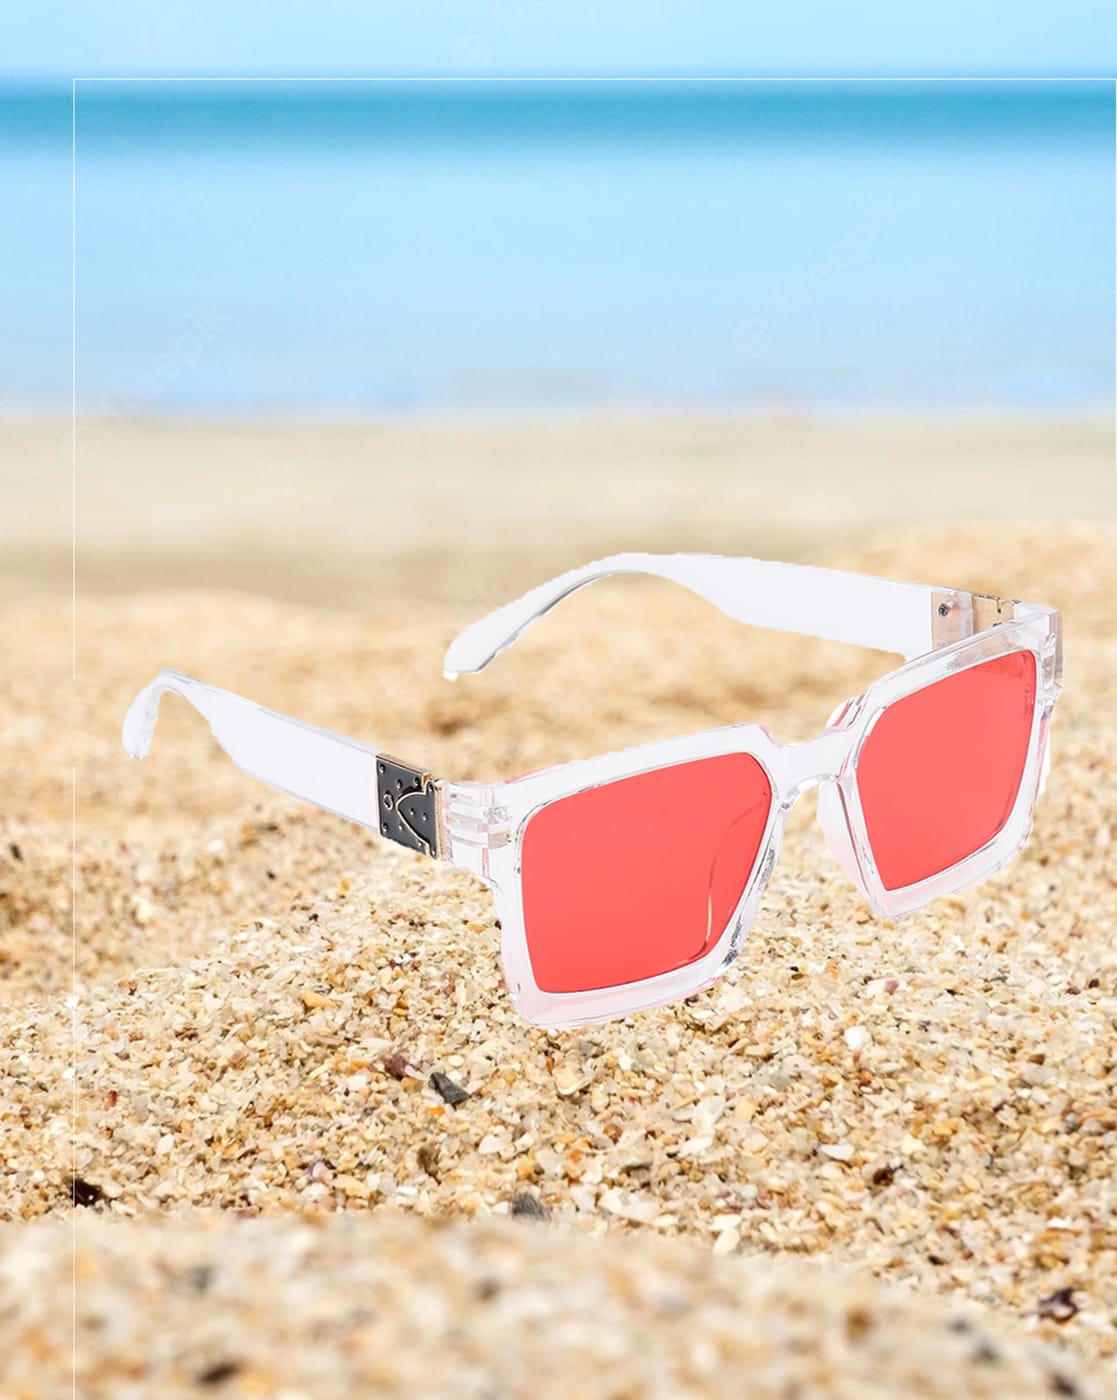 Red Sunglasses for Women | Nordstrom